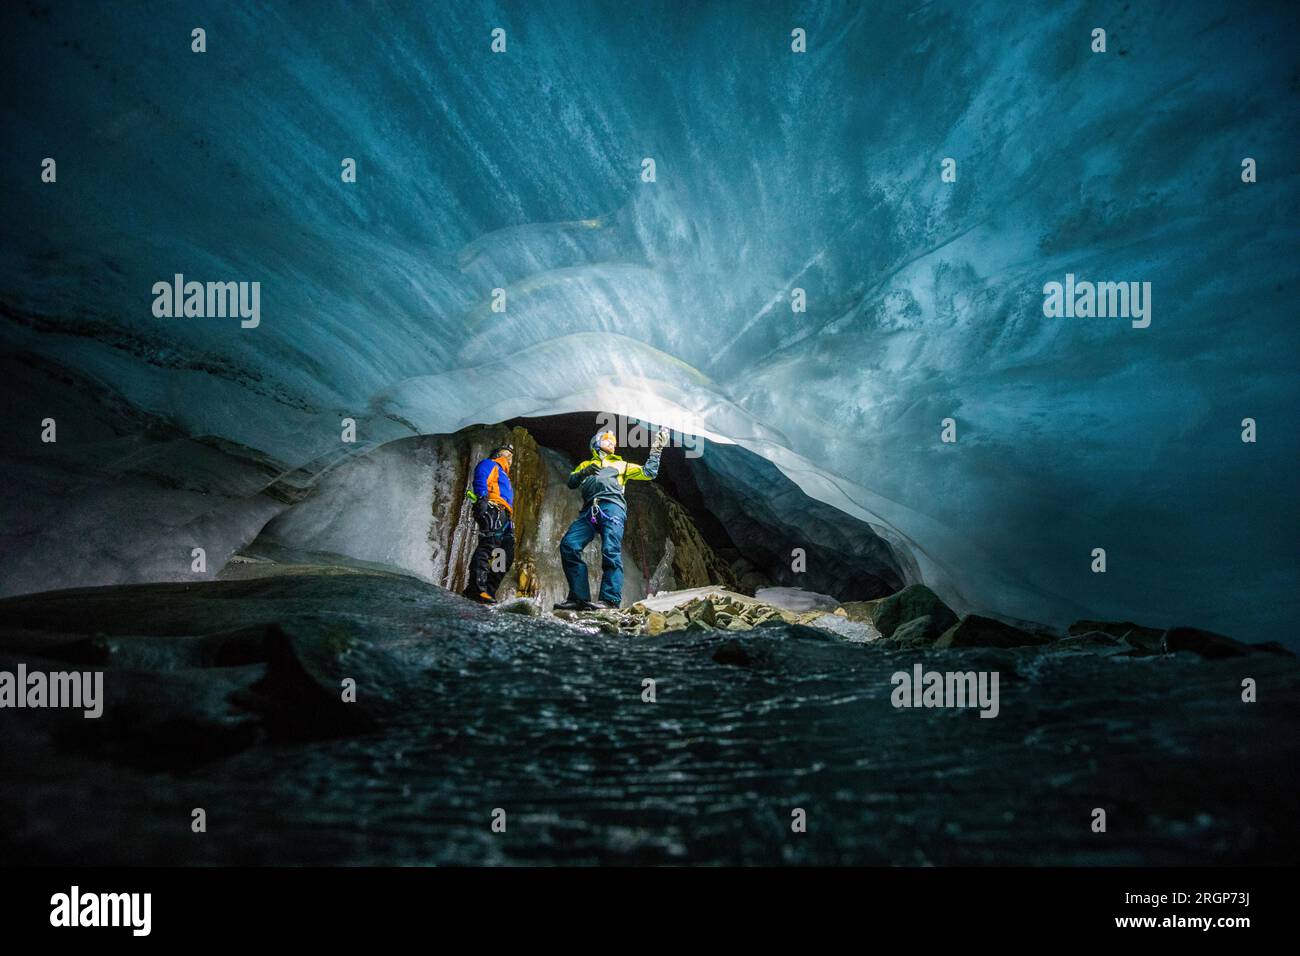 deux hommes s'émerveillent devant une rivière gelée de glace sous un glacier en fonte Banque D'Images